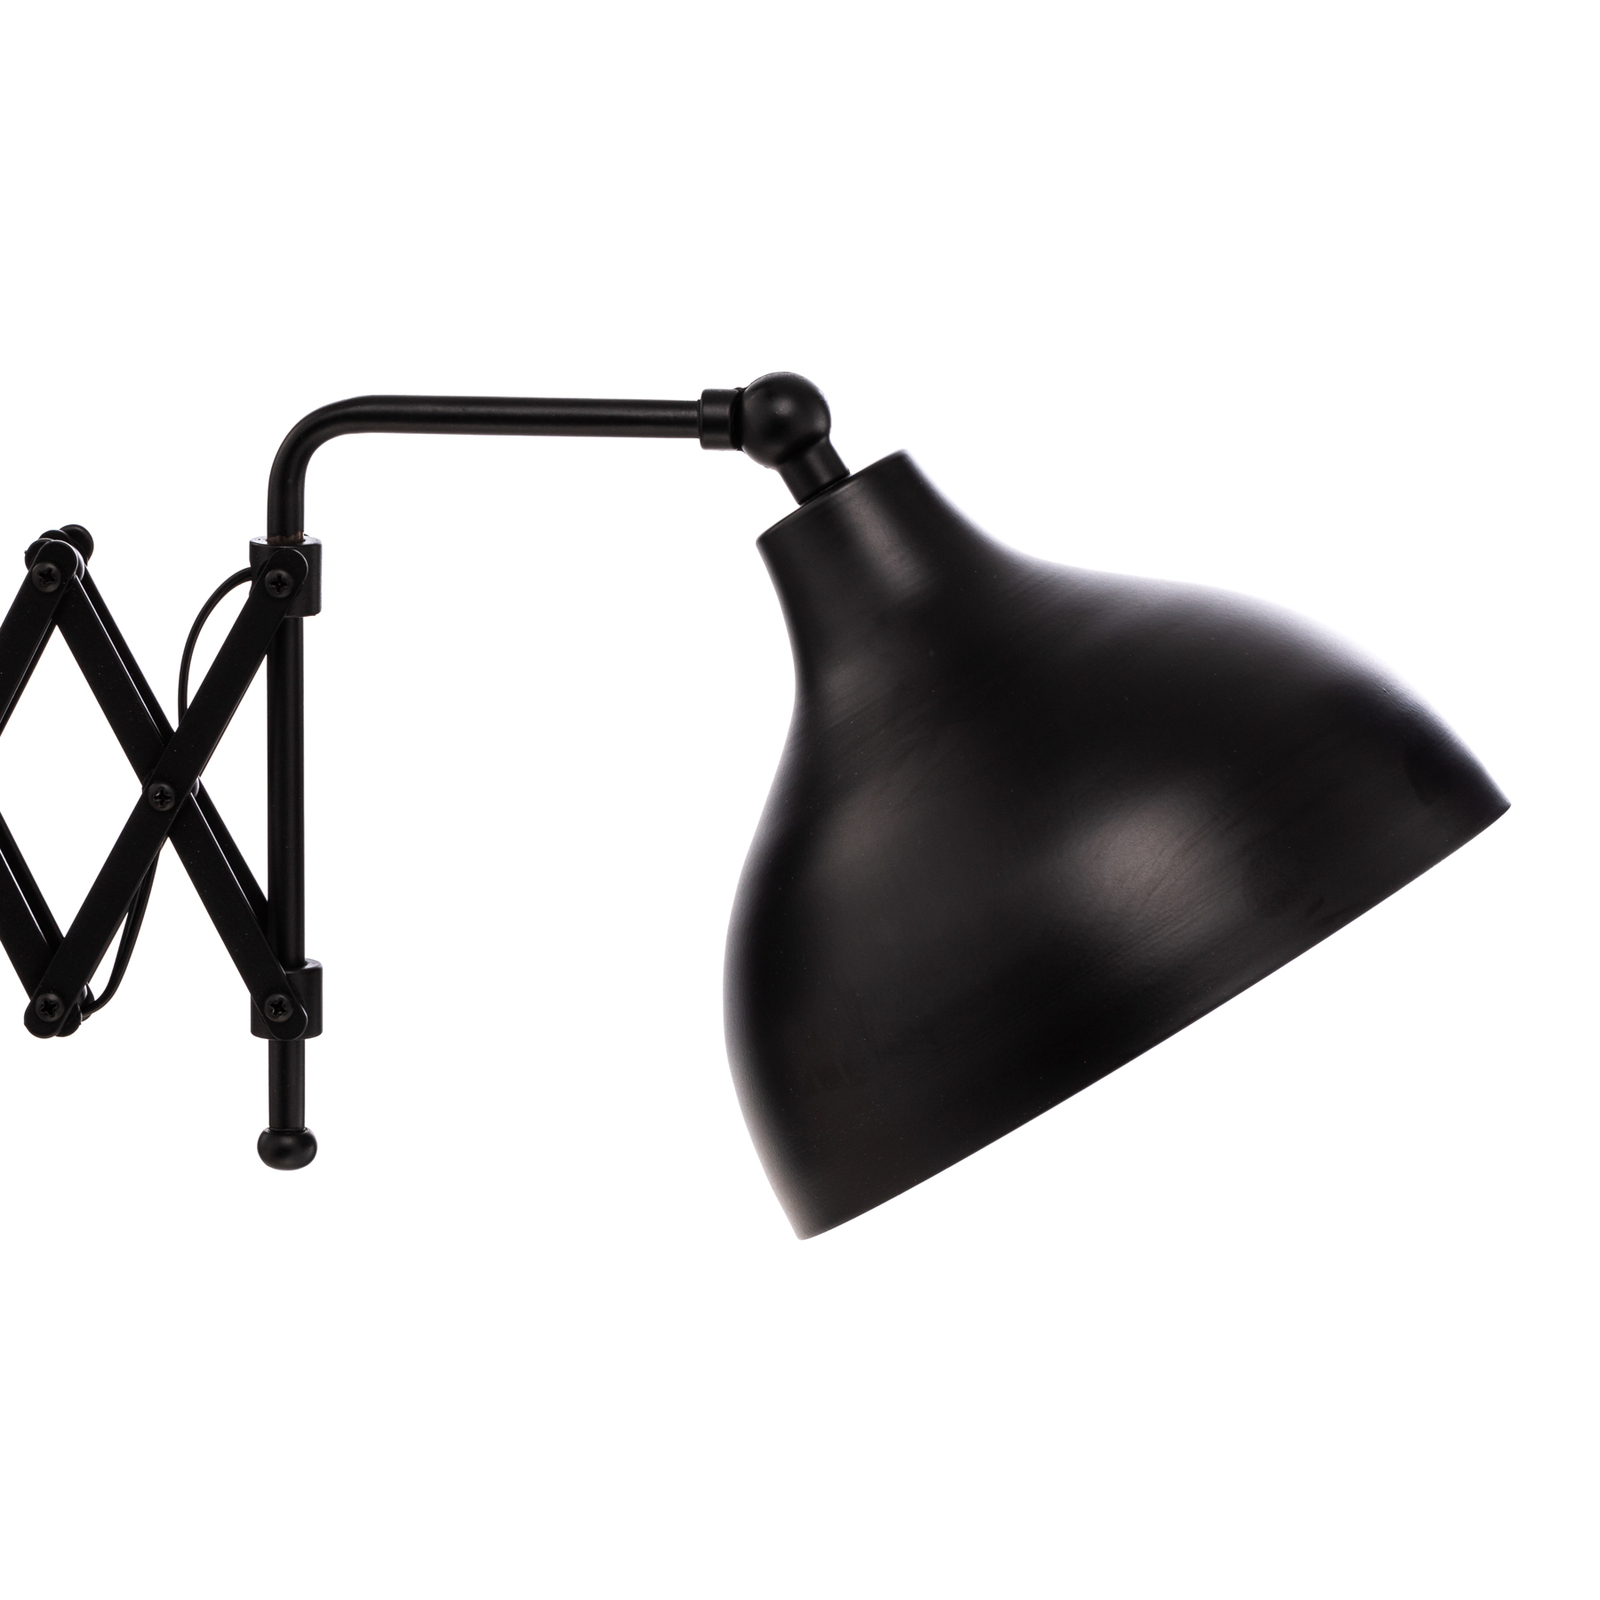 Wandlamp HAP-9082-BSY met schaararm, zwart